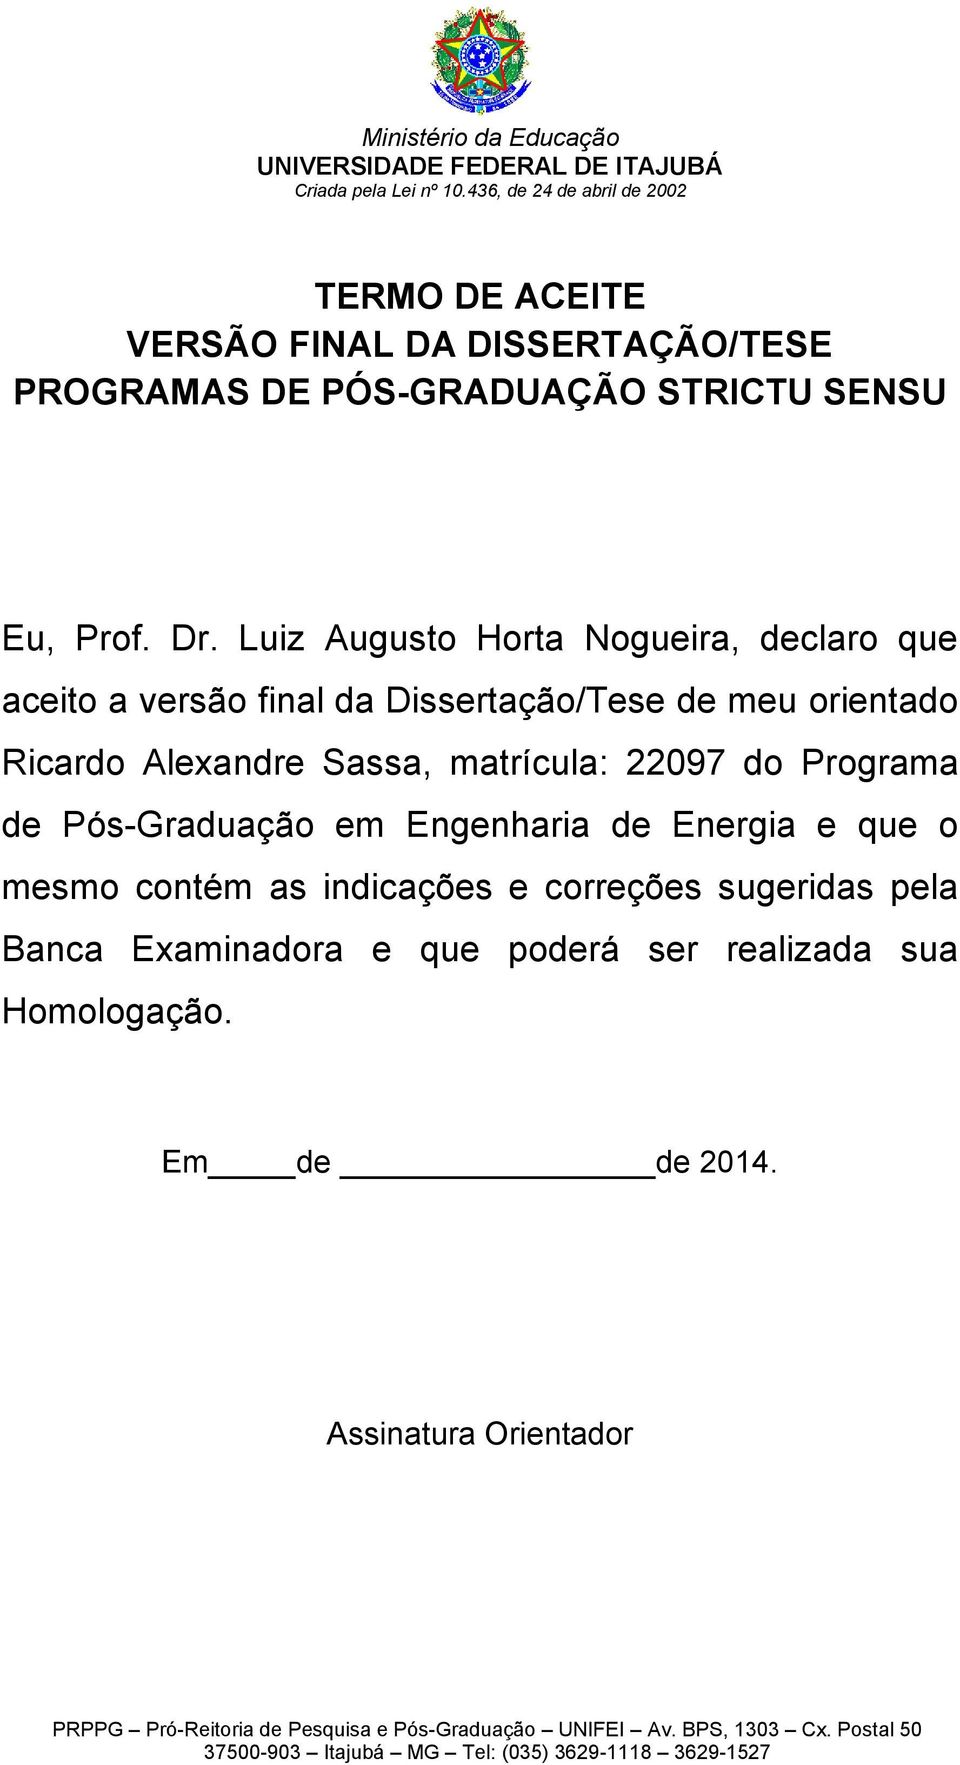 Luiz Augusto Horta Nogueira, declaro que aceito a versão final da Dissertação/Tese de meu orientado Ricardo Alexandre Sassa, matrícula: 22097 do Programa de Pós-Graduação em